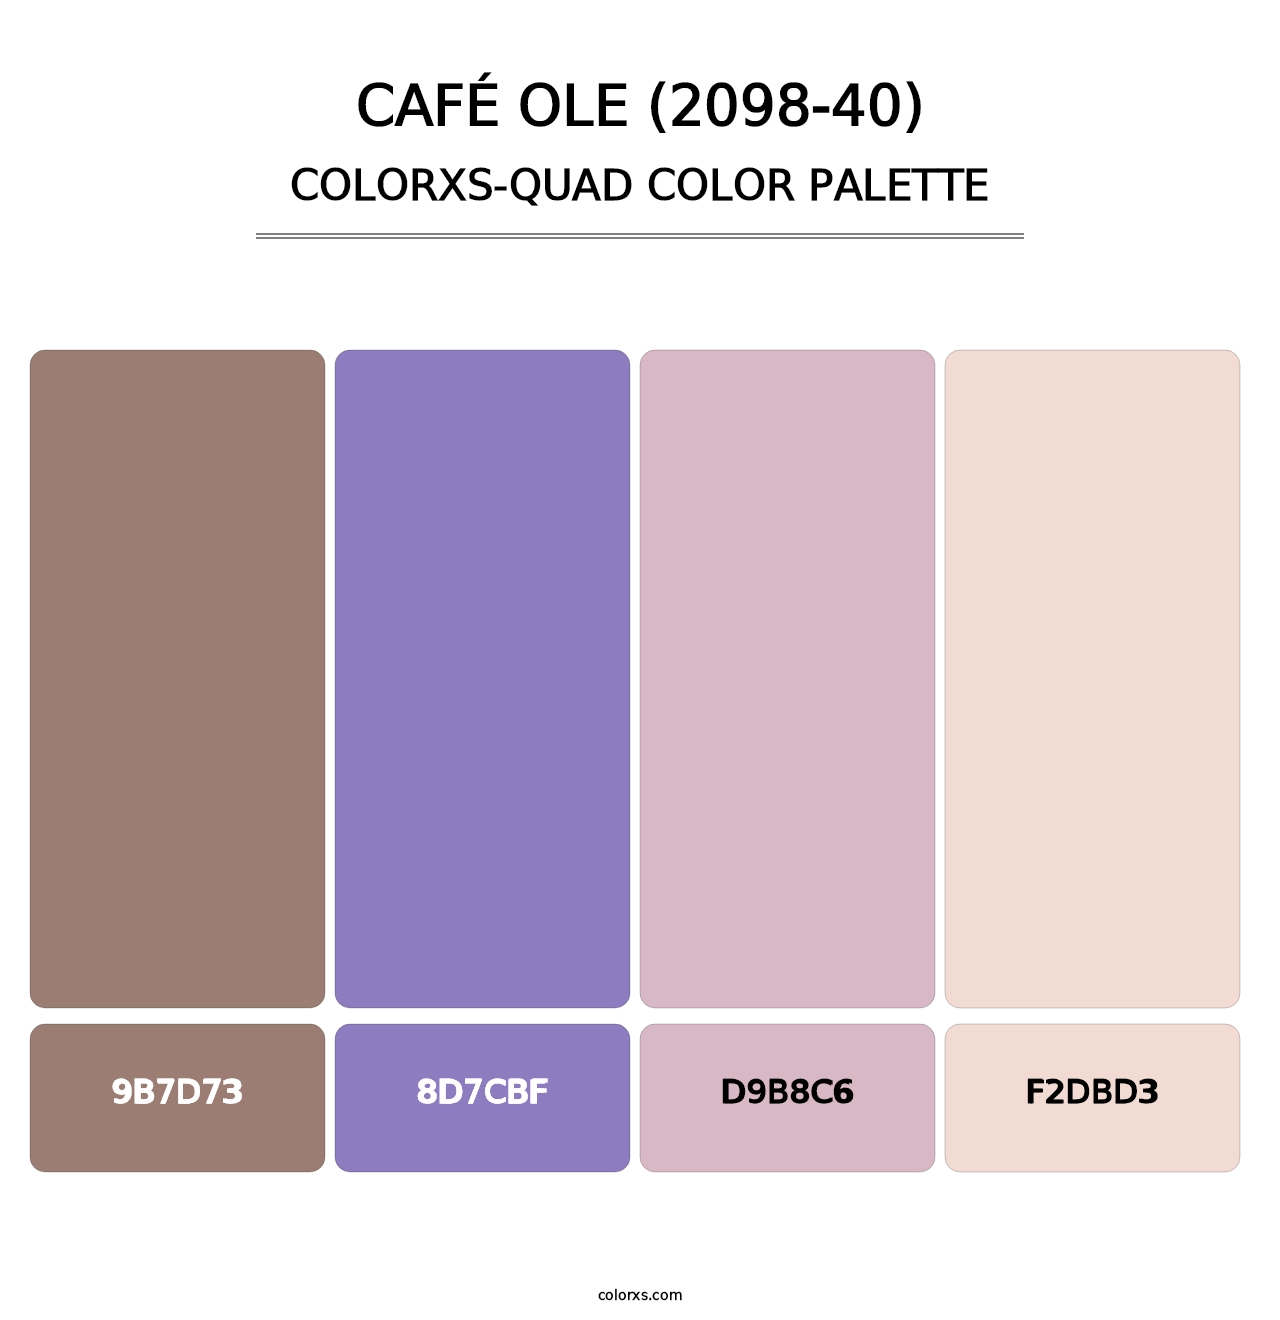 Café Ole (2098-40) - Colorxs Quad Palette